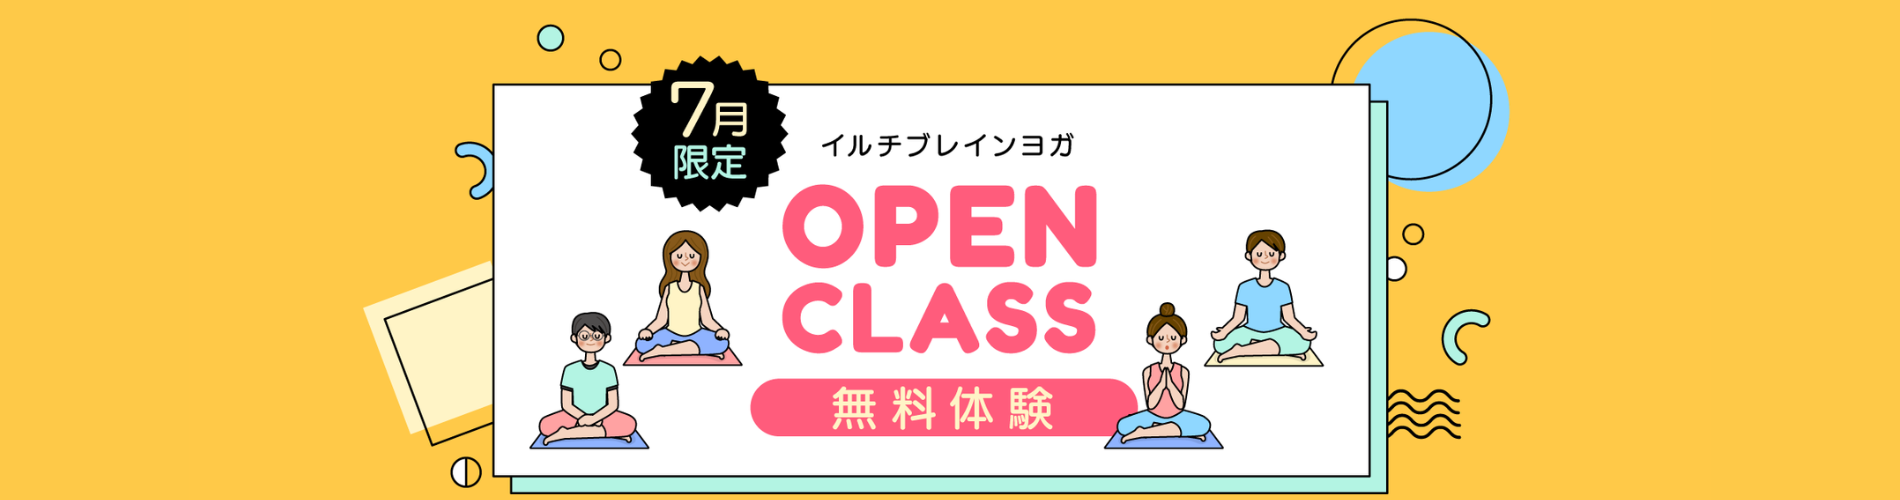 オープンクラス